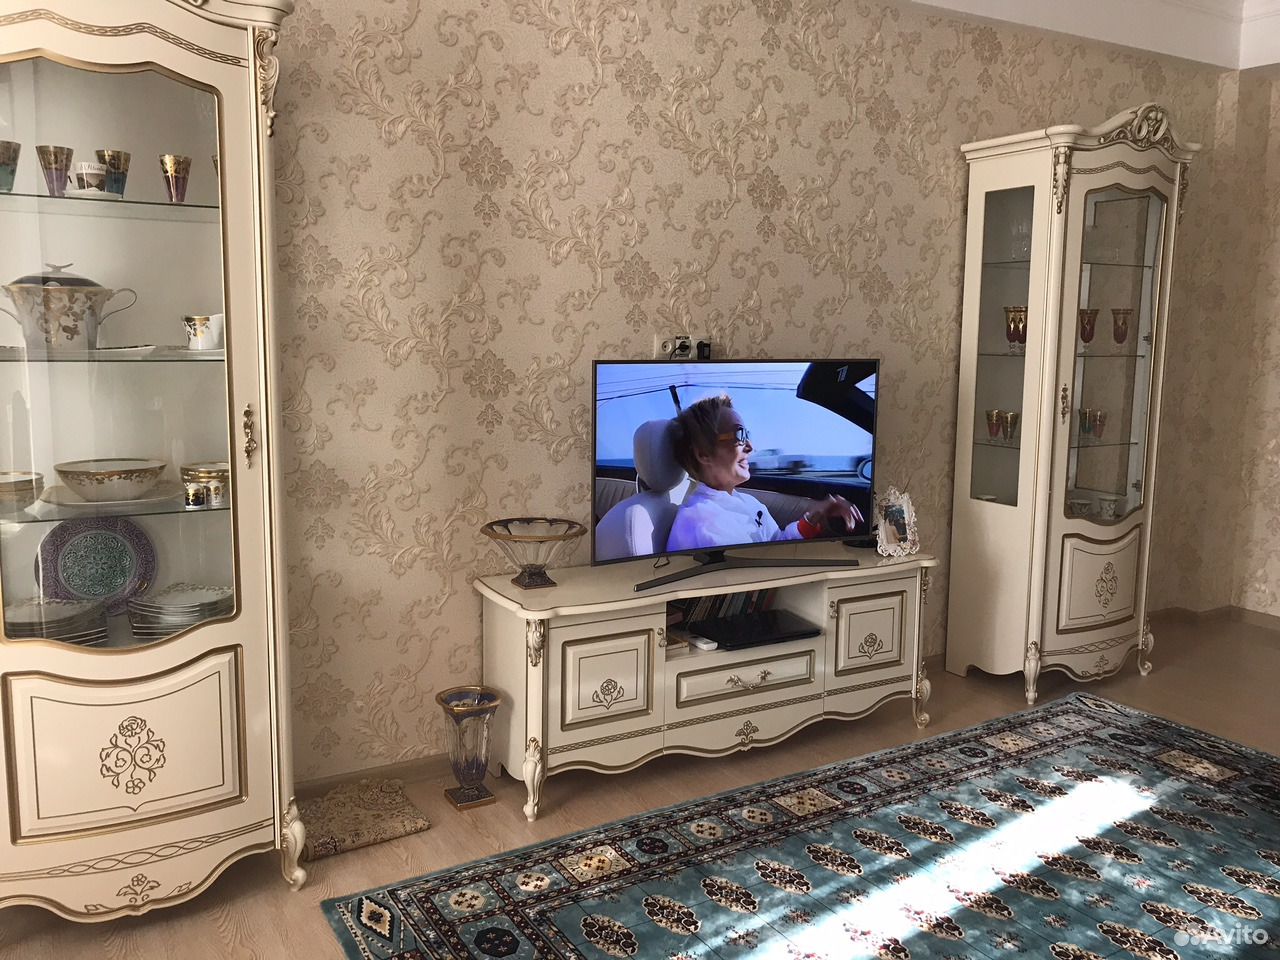 Купить телевизор в махачкале. Мебель Дагестан ТВ для гостиной. Тумбы ТВ Дагестанские. Киргу подставки под телевизор. Тумба под телевизор в дагестанском стиле.